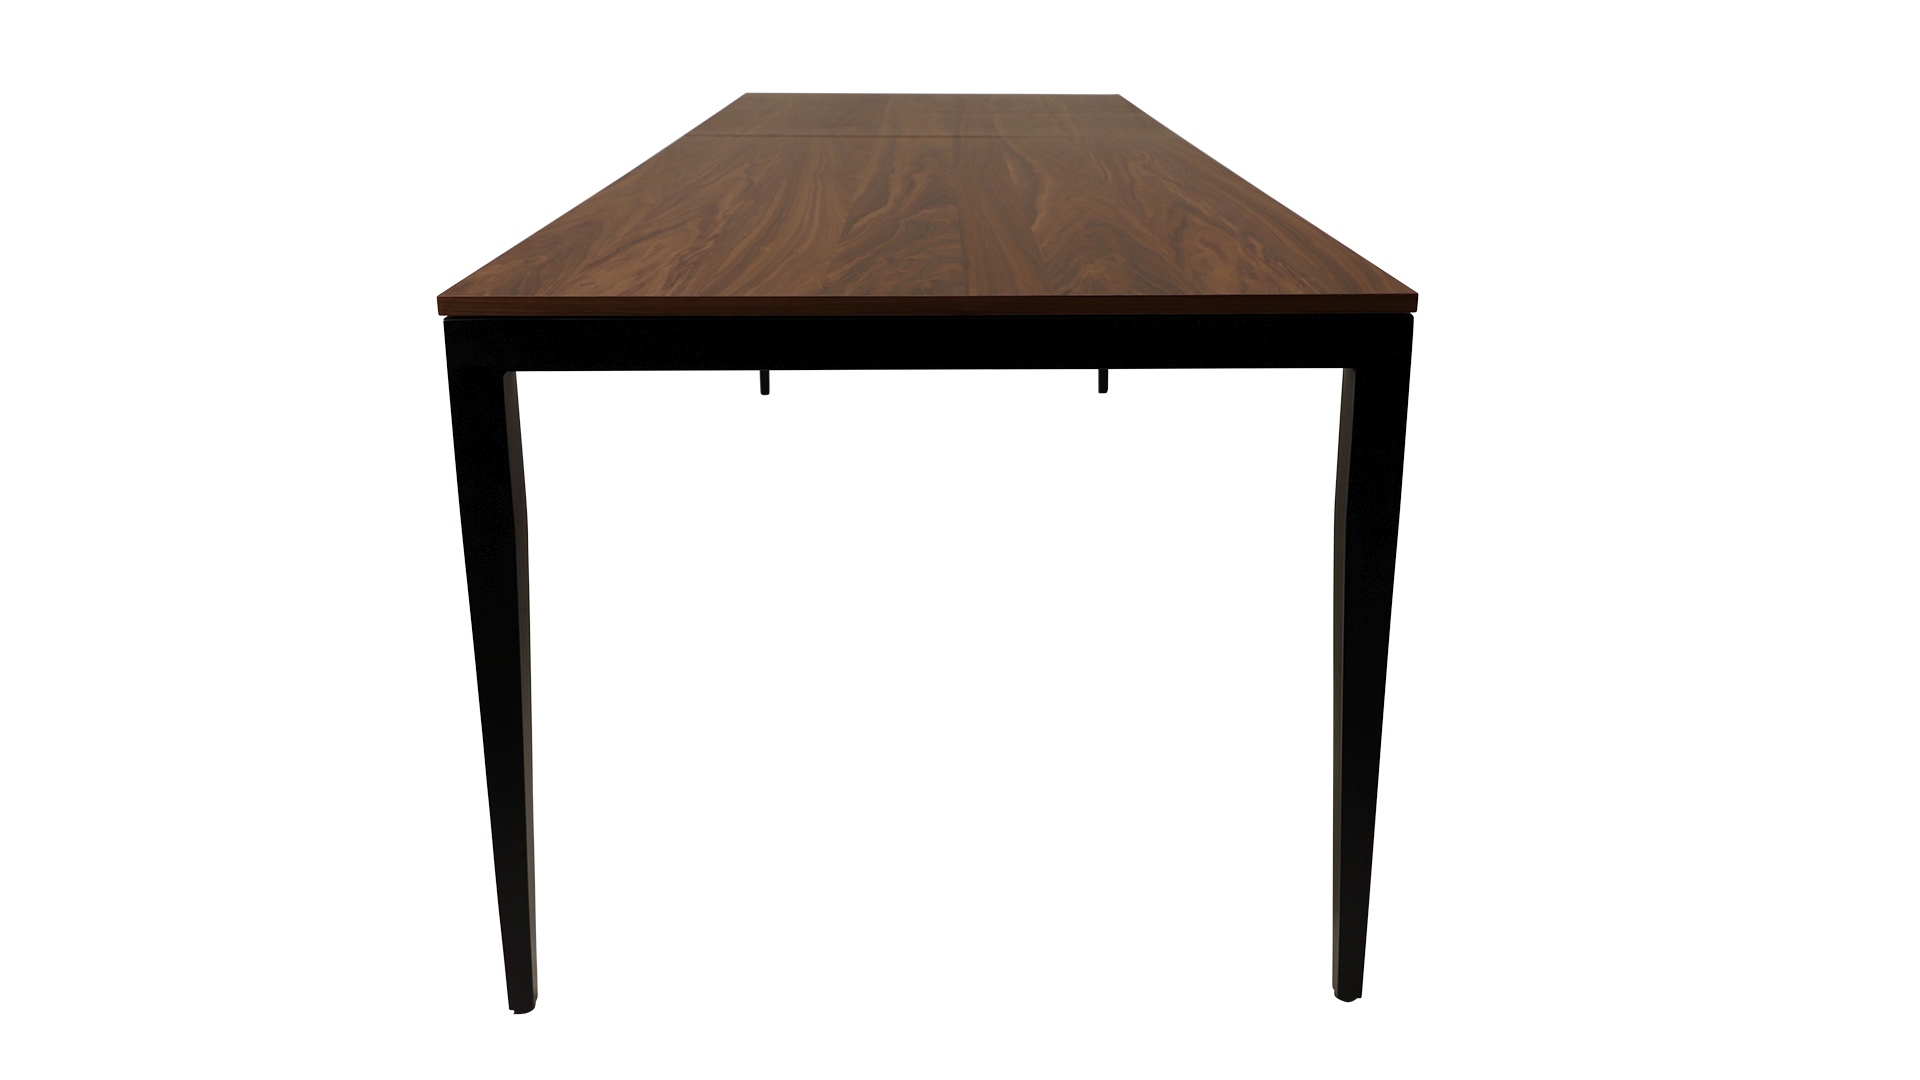 Der schoene Esstisch Jupiter von der Marke Jan Kurtz ist ausziehbar. Der Tisch besitzt ein schwarzes Metall Gestell mit einer Tischplatte in Nussbaum Optik.